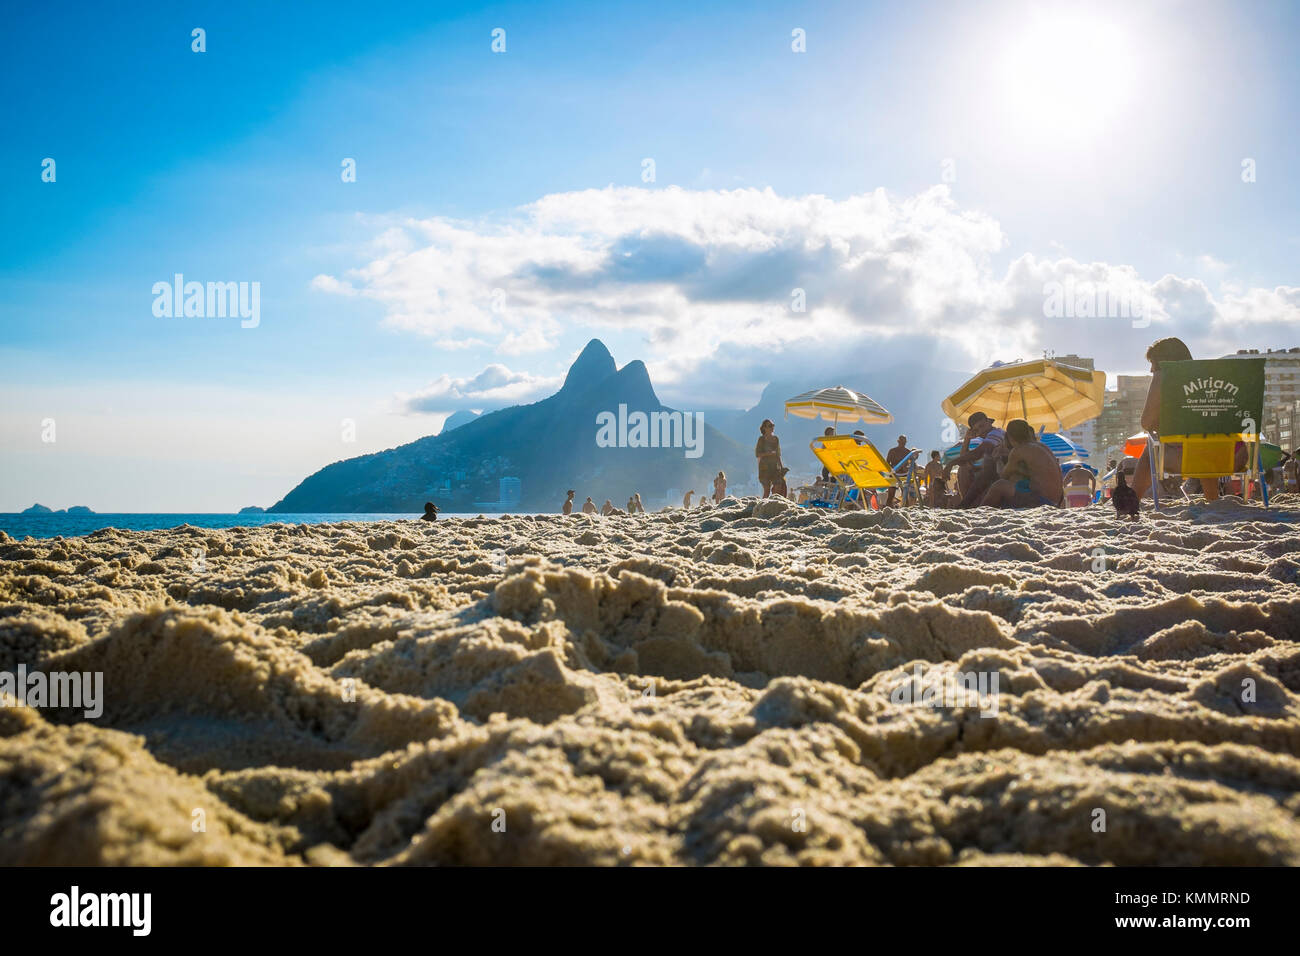 Rio de Janeiro - marzo 06, 2016: le persone a rilassarsi sulla spiaggia di Ipanema contro l'iconica silhouette di due fratelli mountain in background. Foto Stock